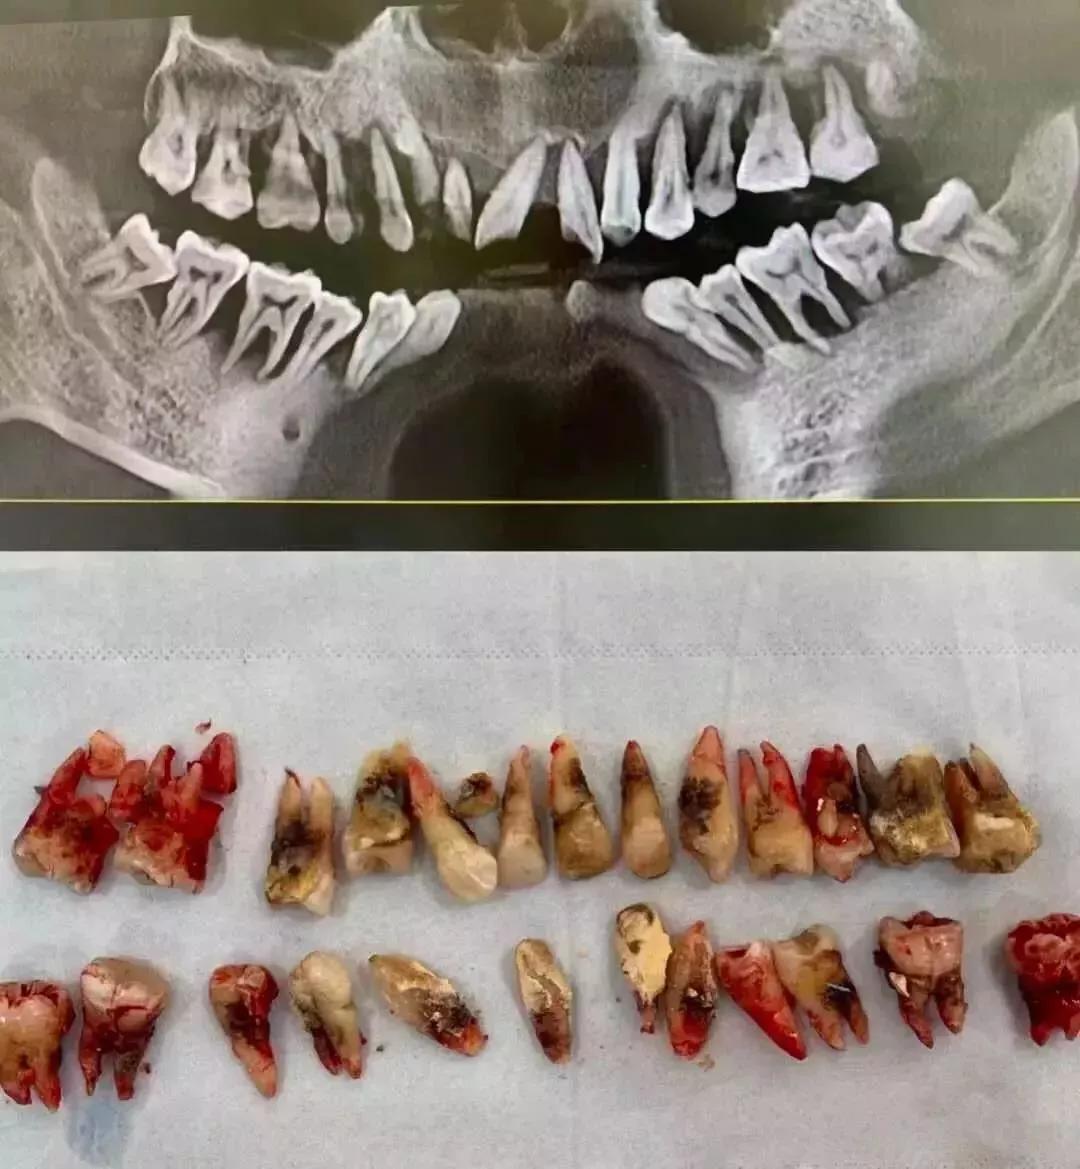 严重时牙龈会溢脓,牙龈退缩,牙槽骨吸收,牙缝慢慢变大,最后牙齿松动